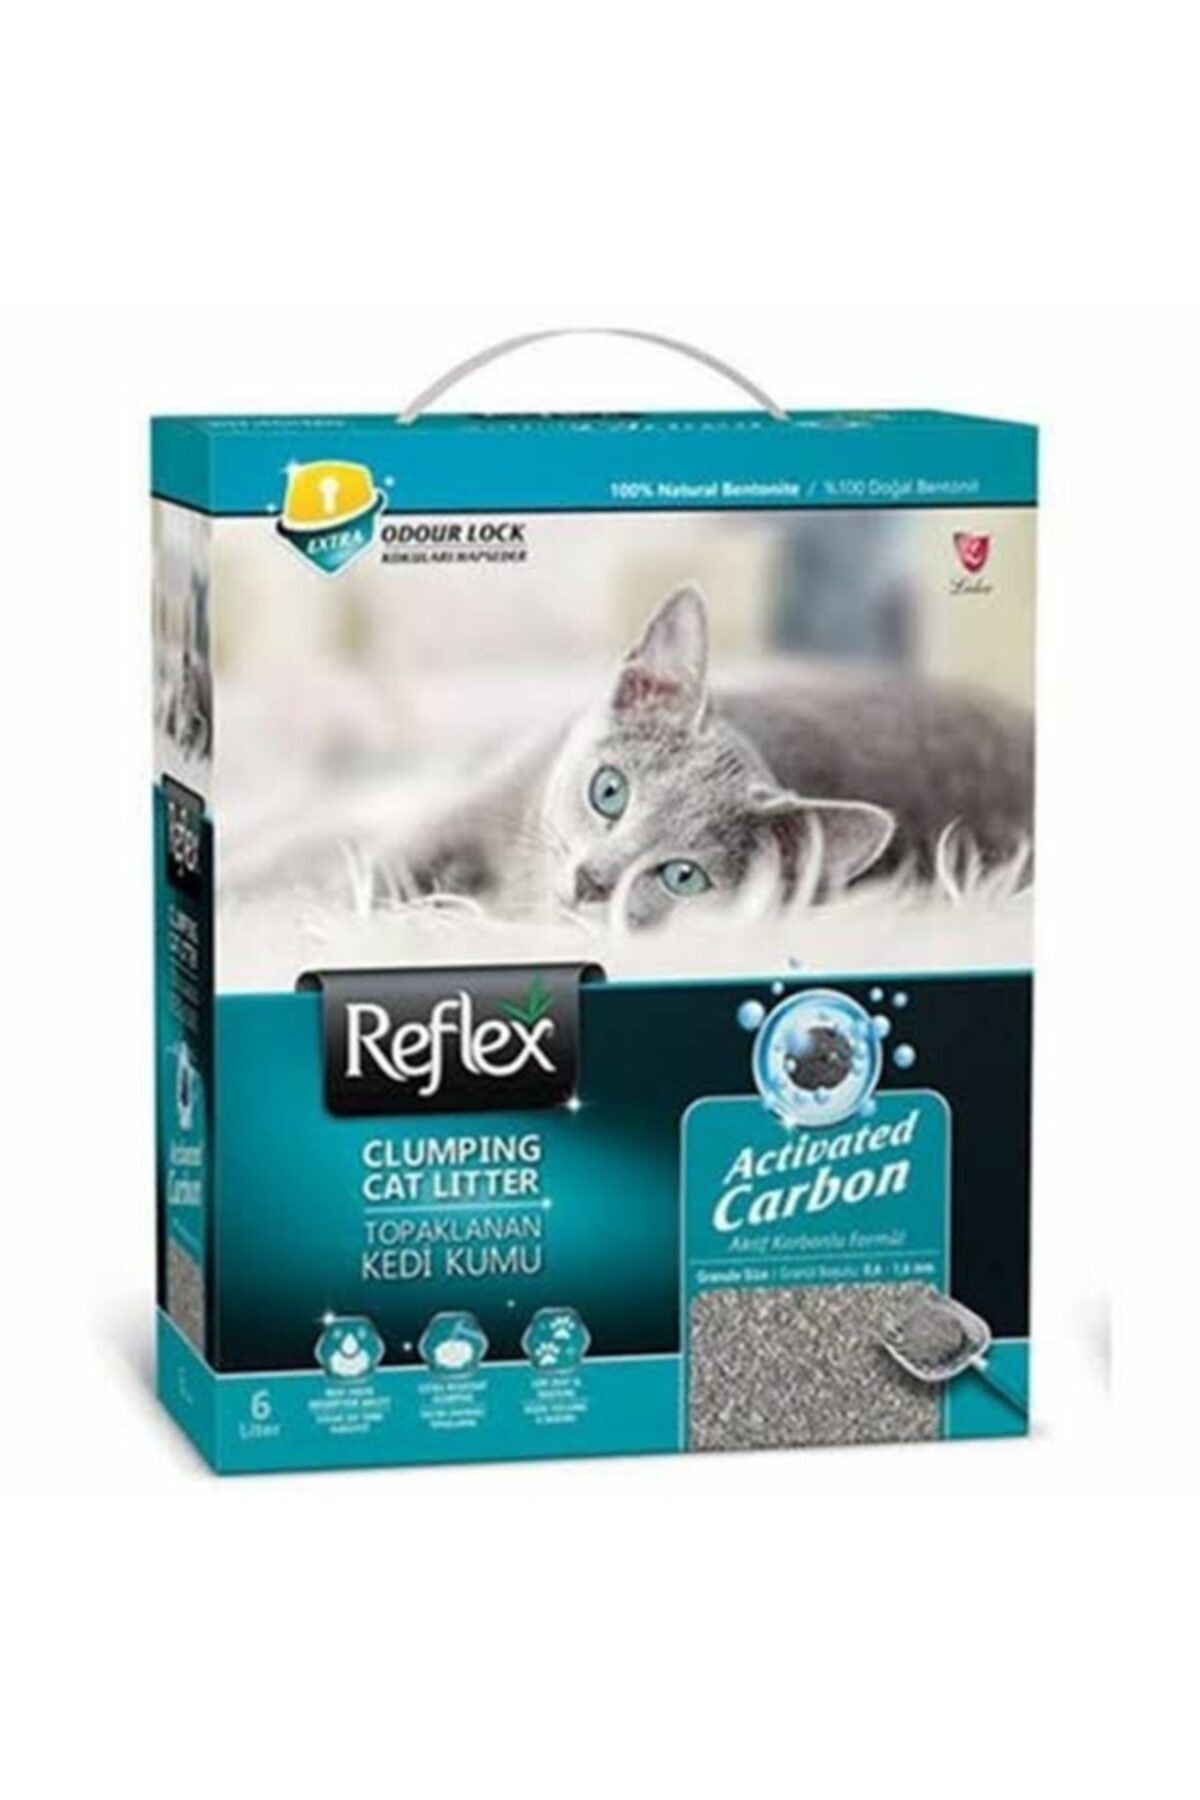 Reflex Aktif Karbonlu Topaklanan Kedi Kumu 6 L